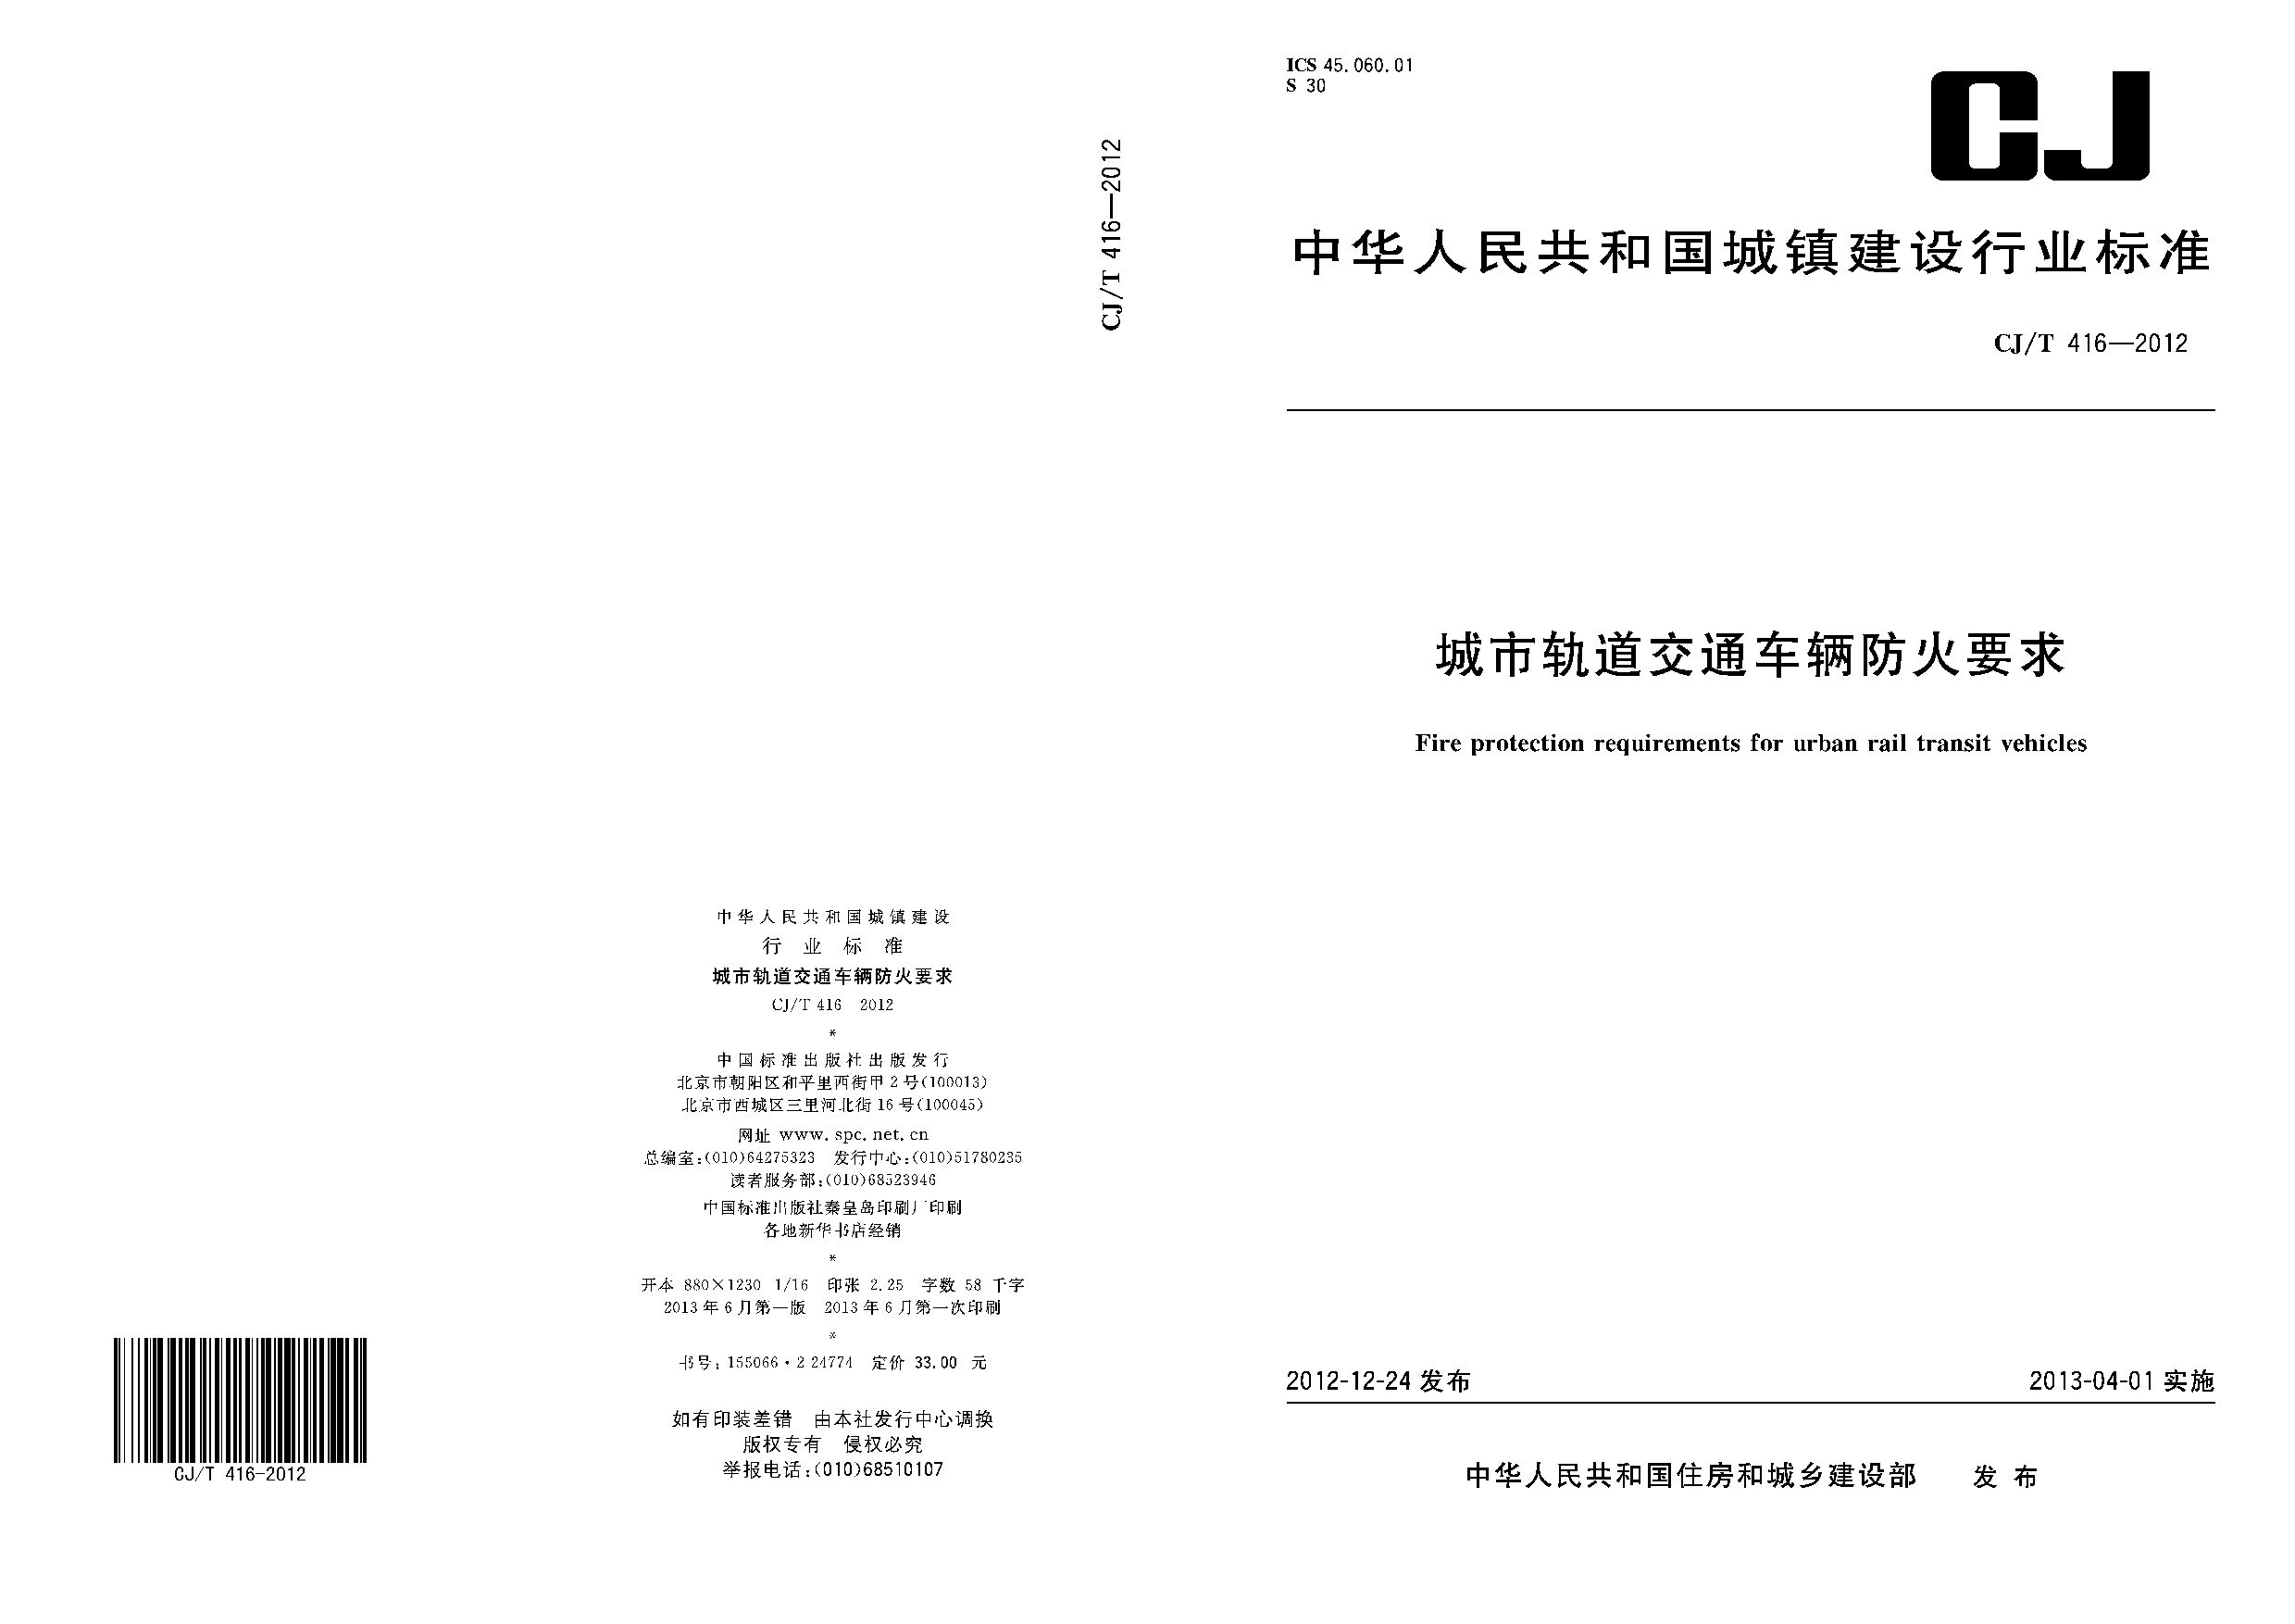 CJ/T 416-2012封面图